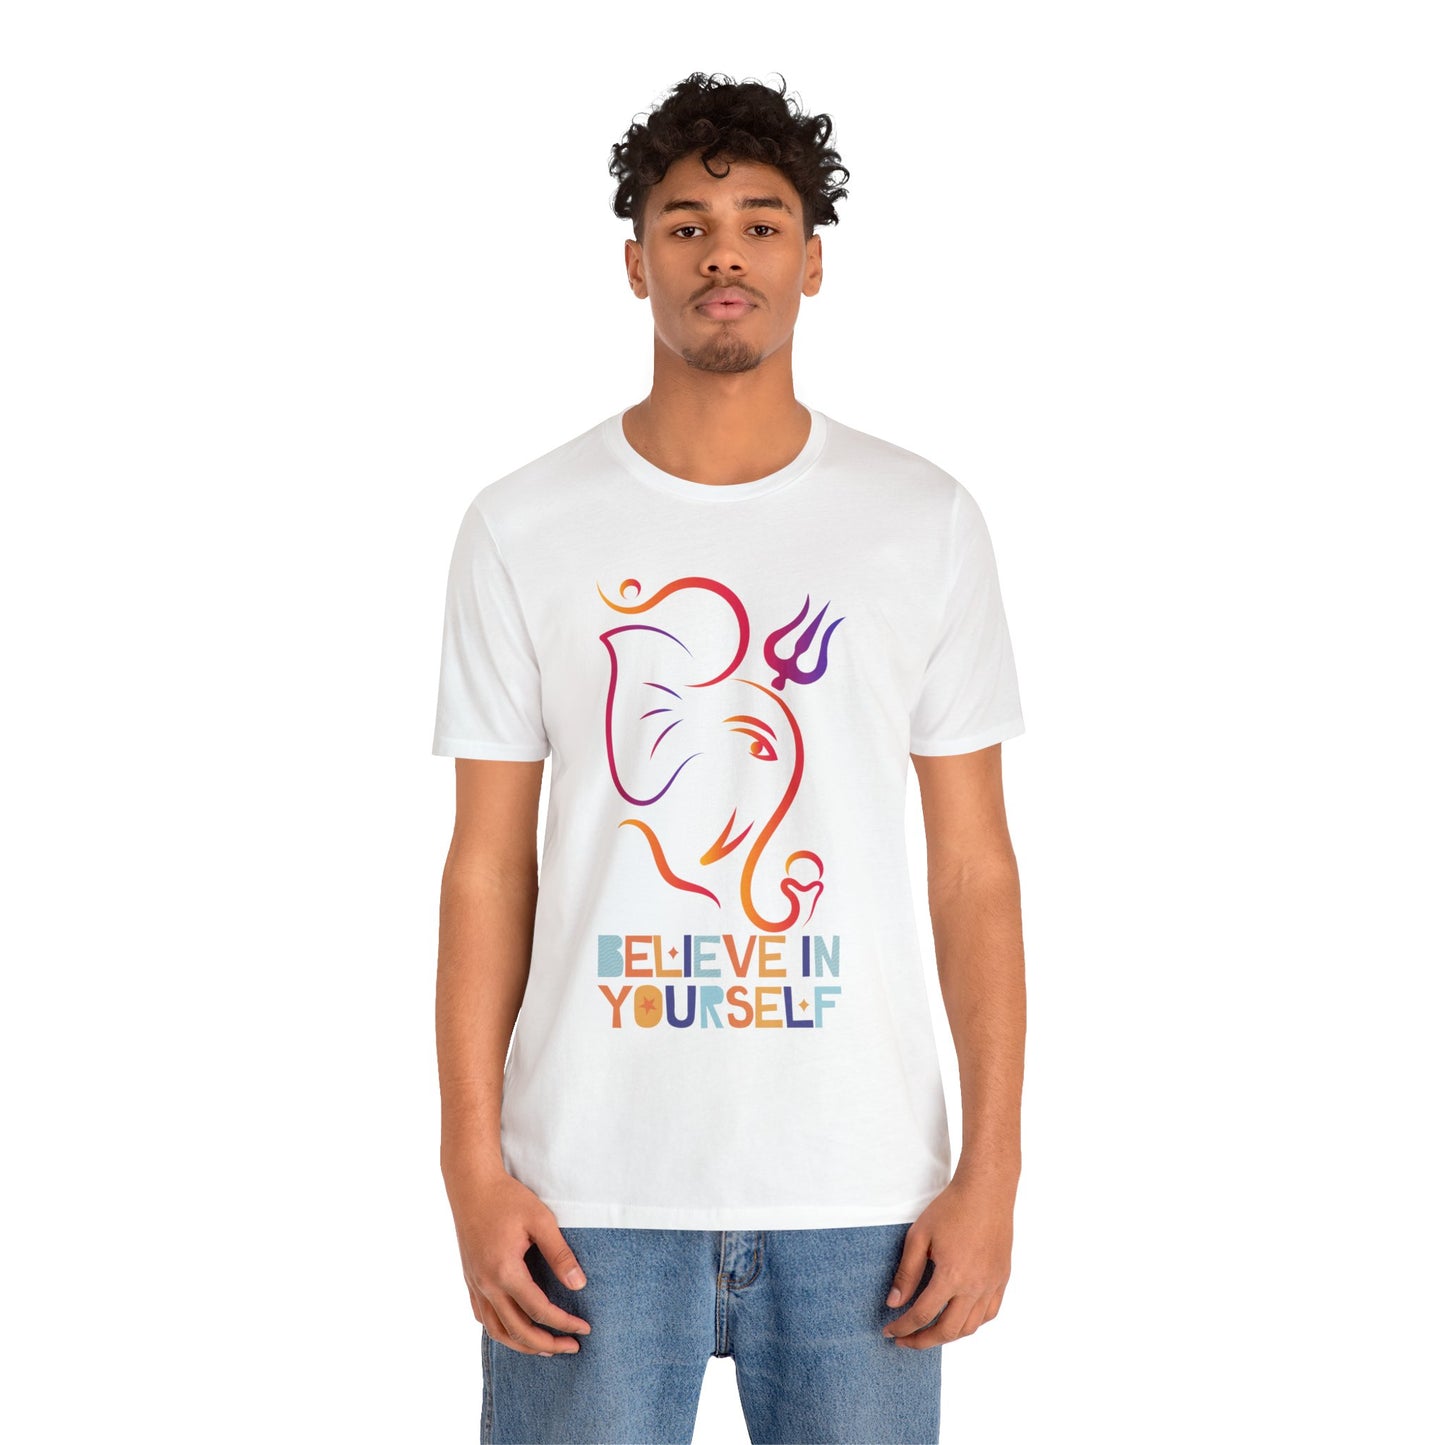 Divine Ganesha: Elegant Hindu Mythology-Inspired T-Shirt Unisex Jersey Short Sleeve Tee